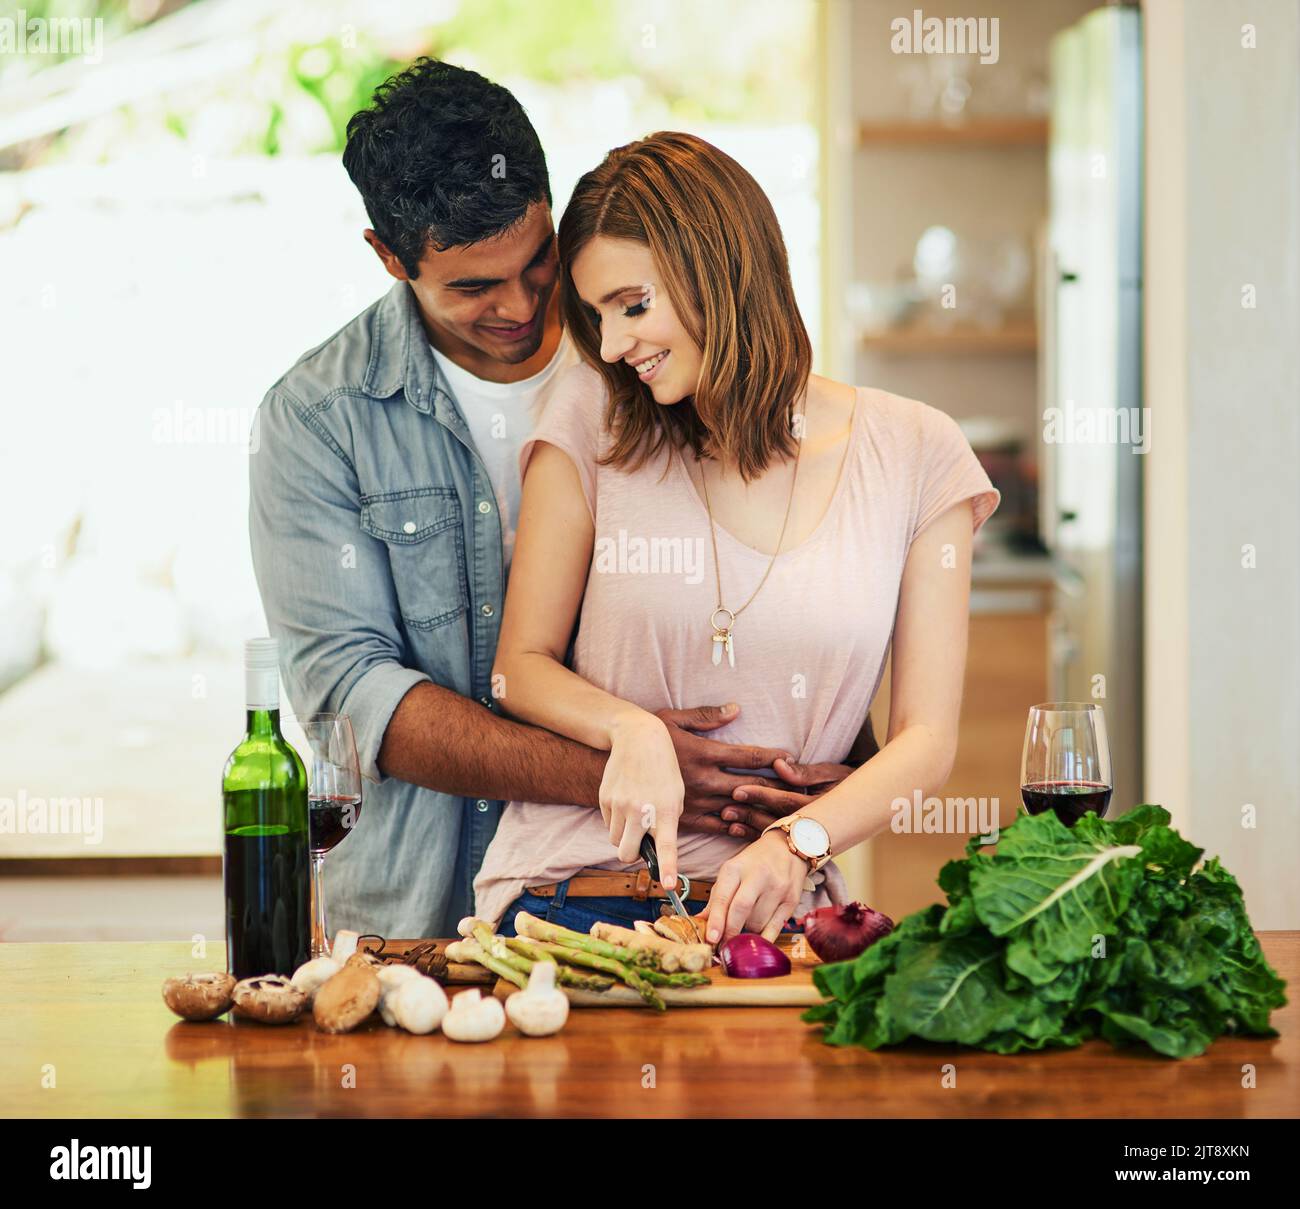 Ein junger Mann umarmte seine Frau, während sie das Abendessen zubereitete. Stockfoto